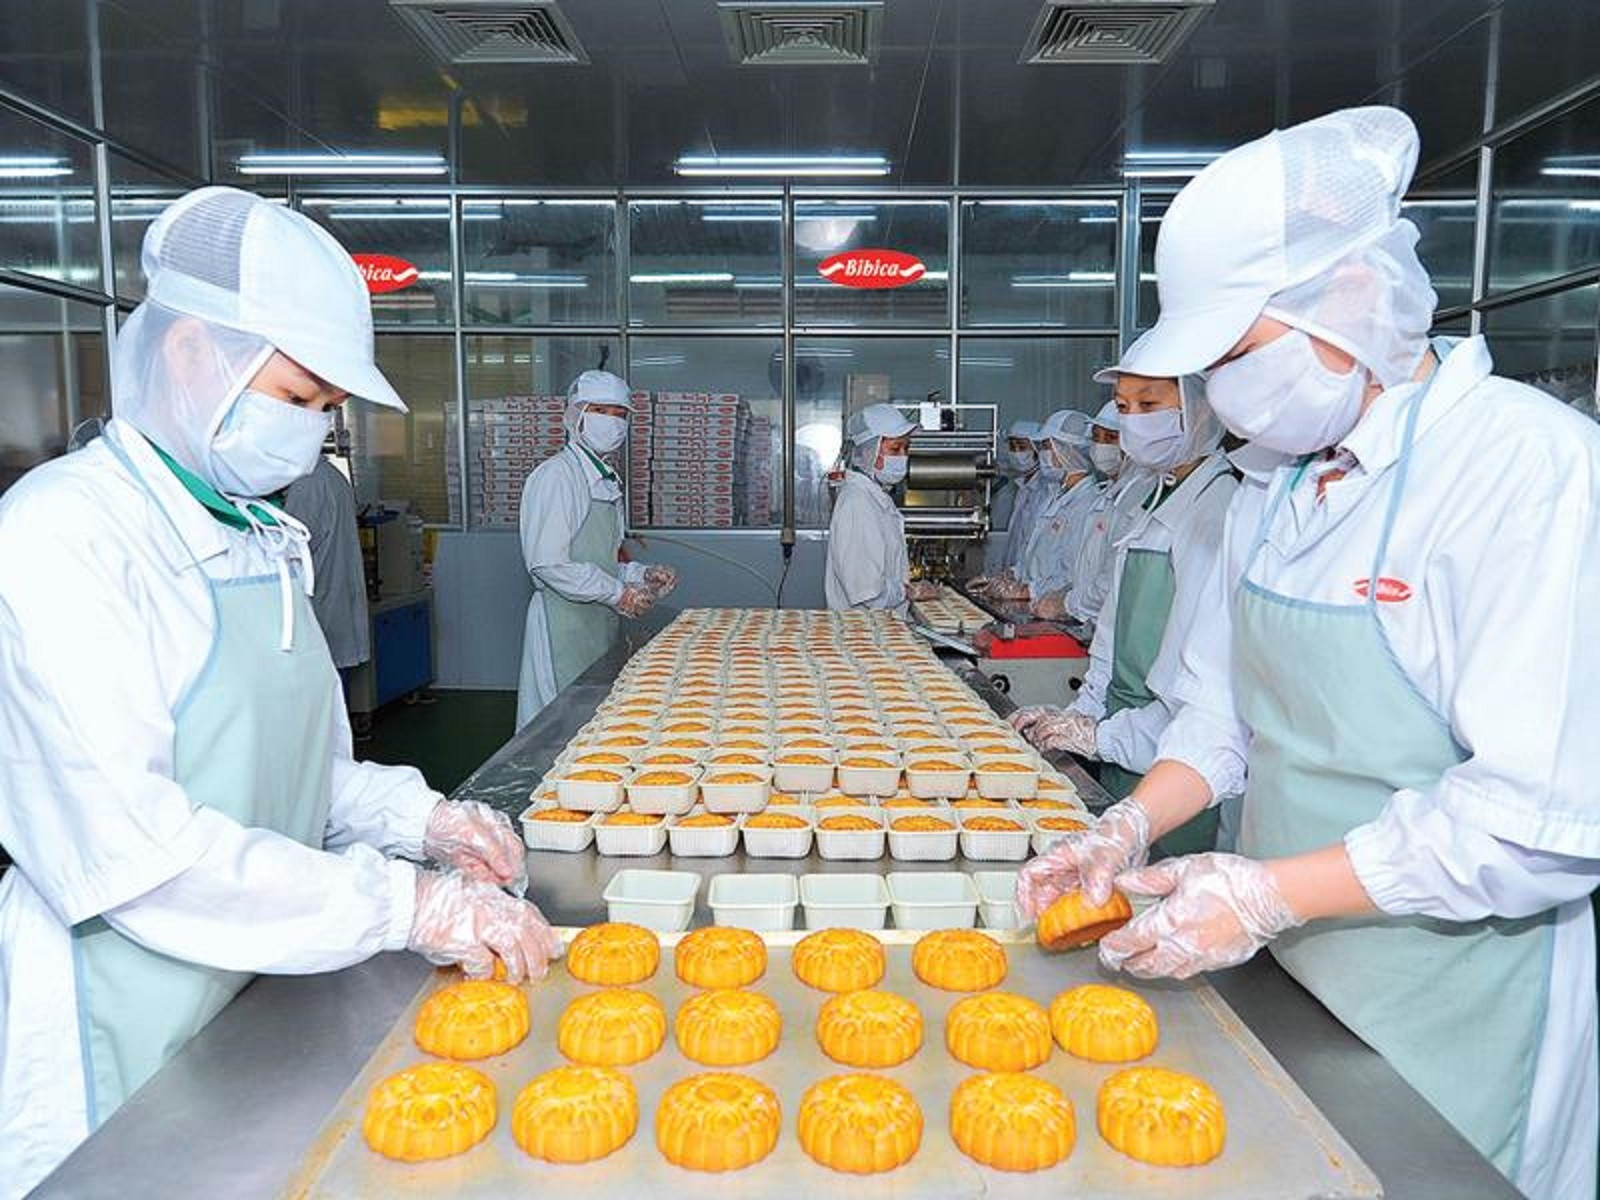 Giá đường và nhiều nguyên liệu tăng cao khiến doanh nghiệp bánh kẹo gặp nhiều khó khăn. (Ảnh minh họa: Báo Đầu tư)